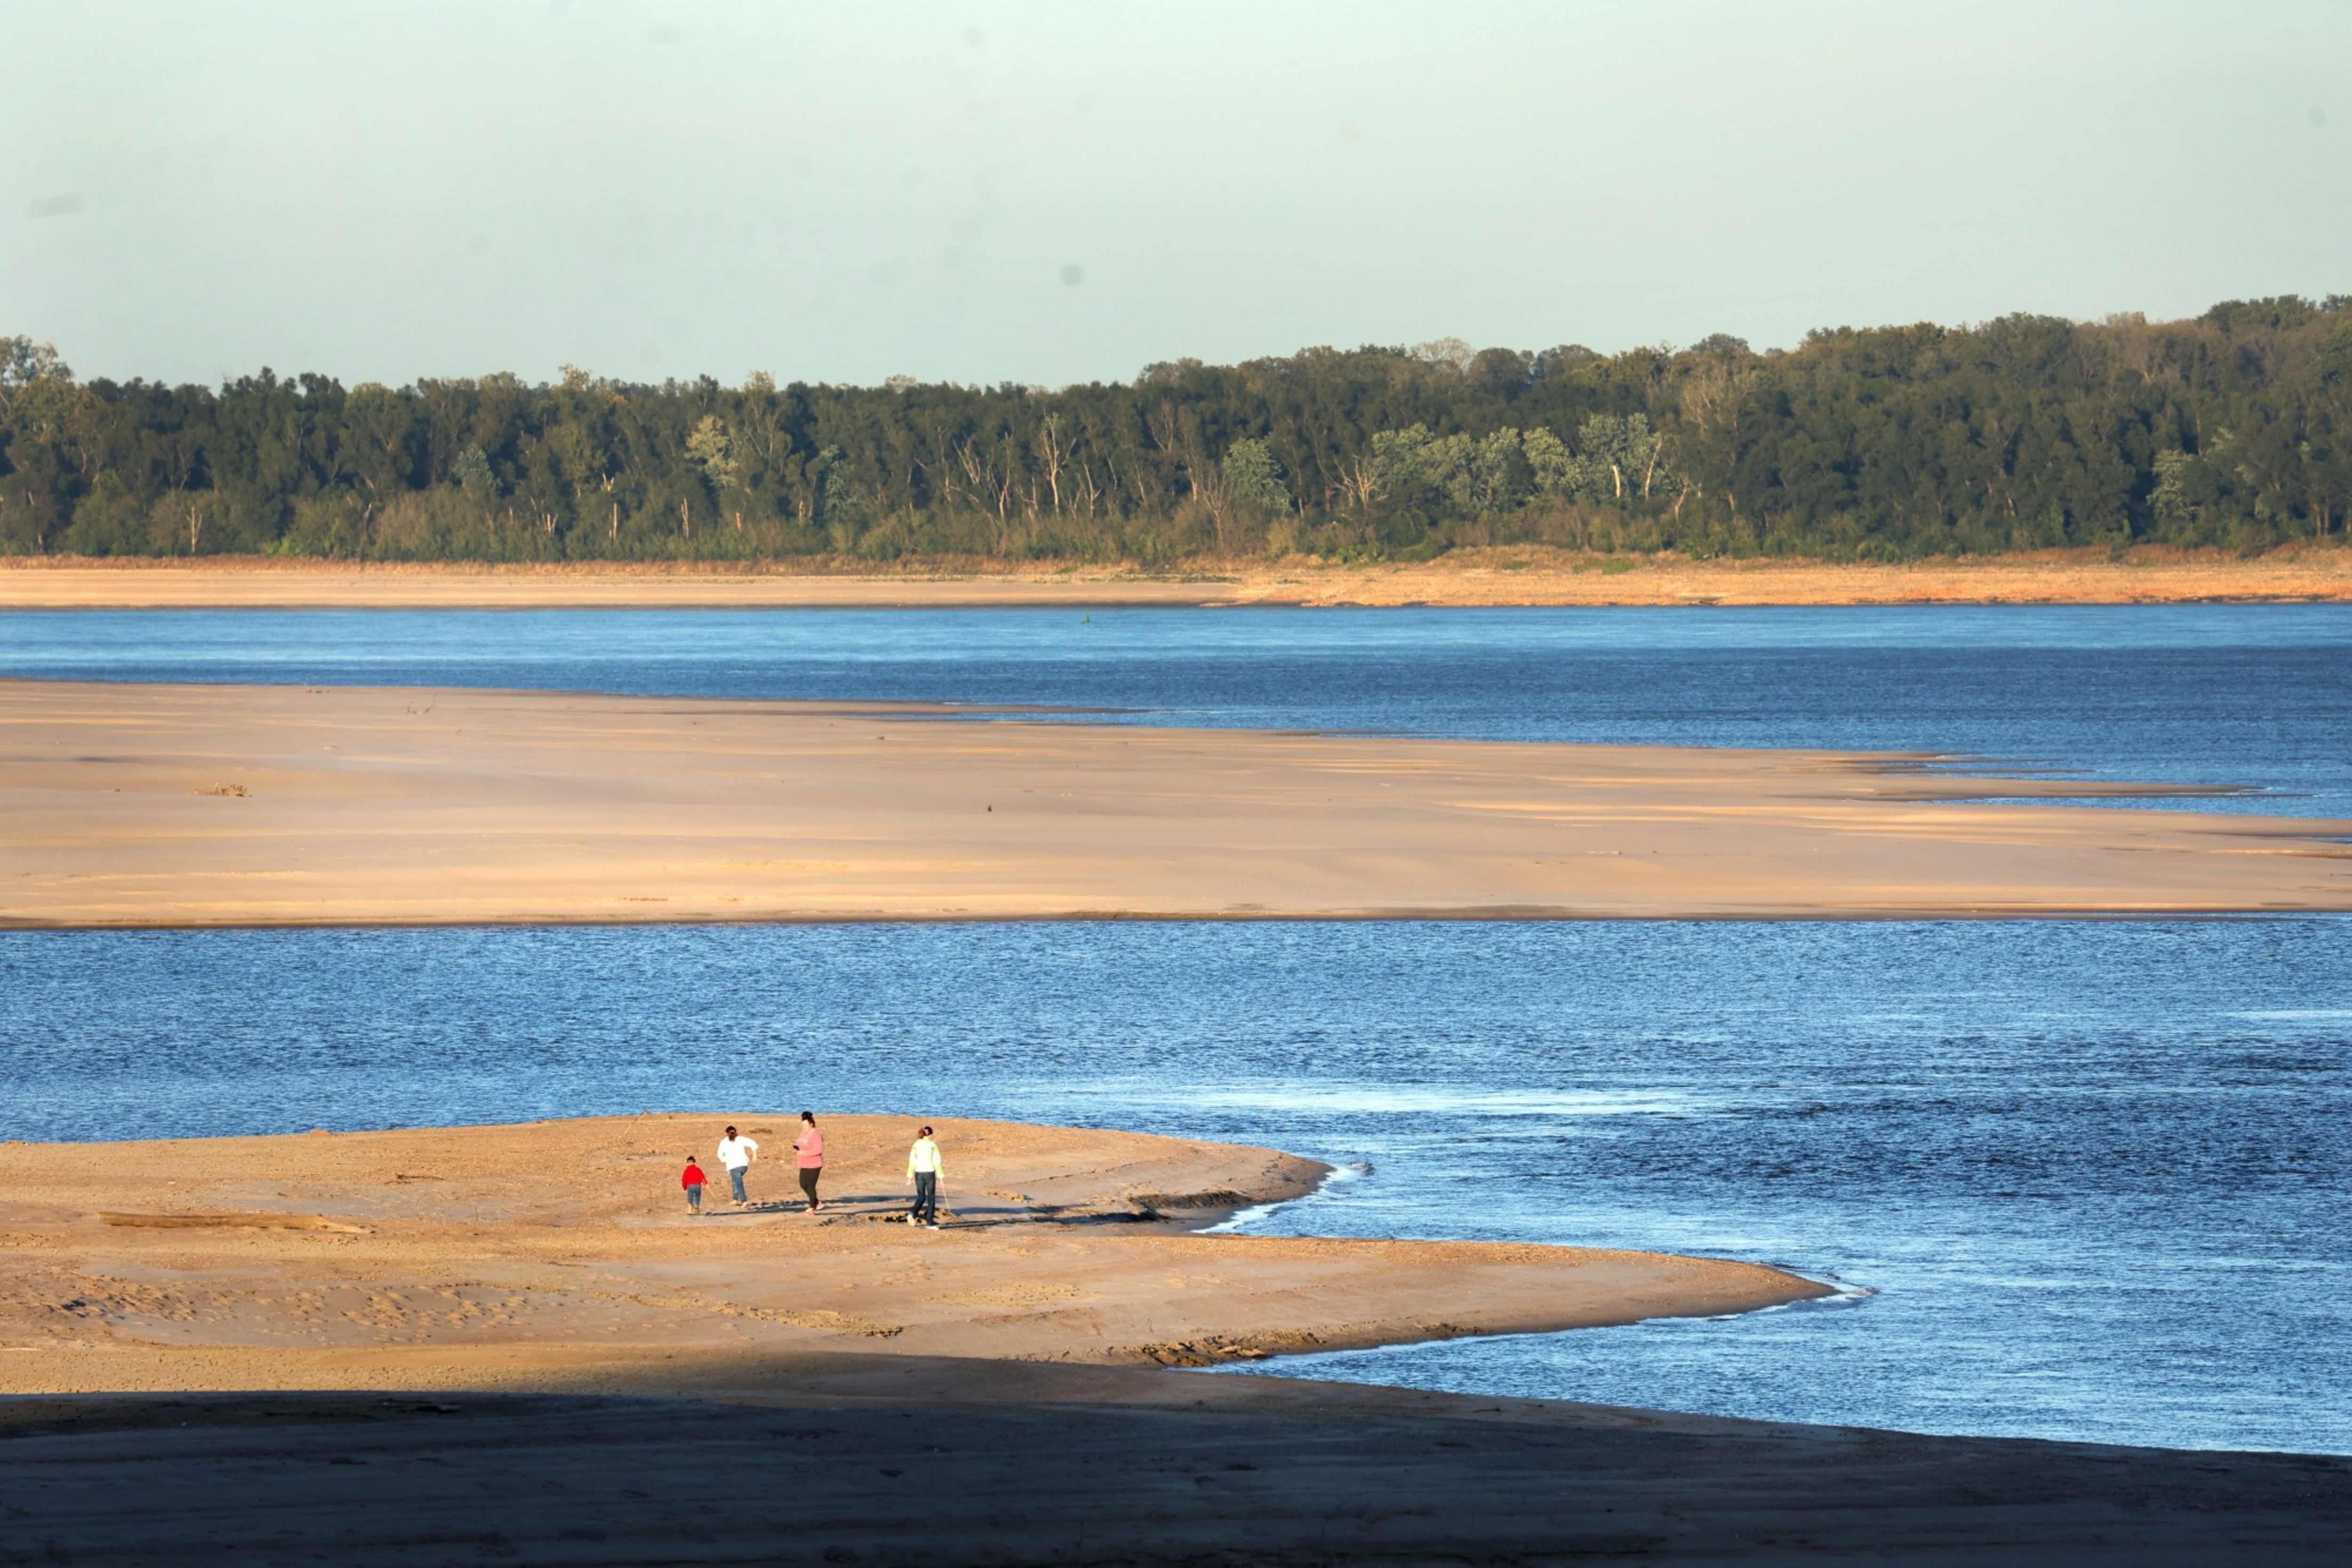 Río Mississippi, puerto clave en EU, tiene niveles críticos de agua